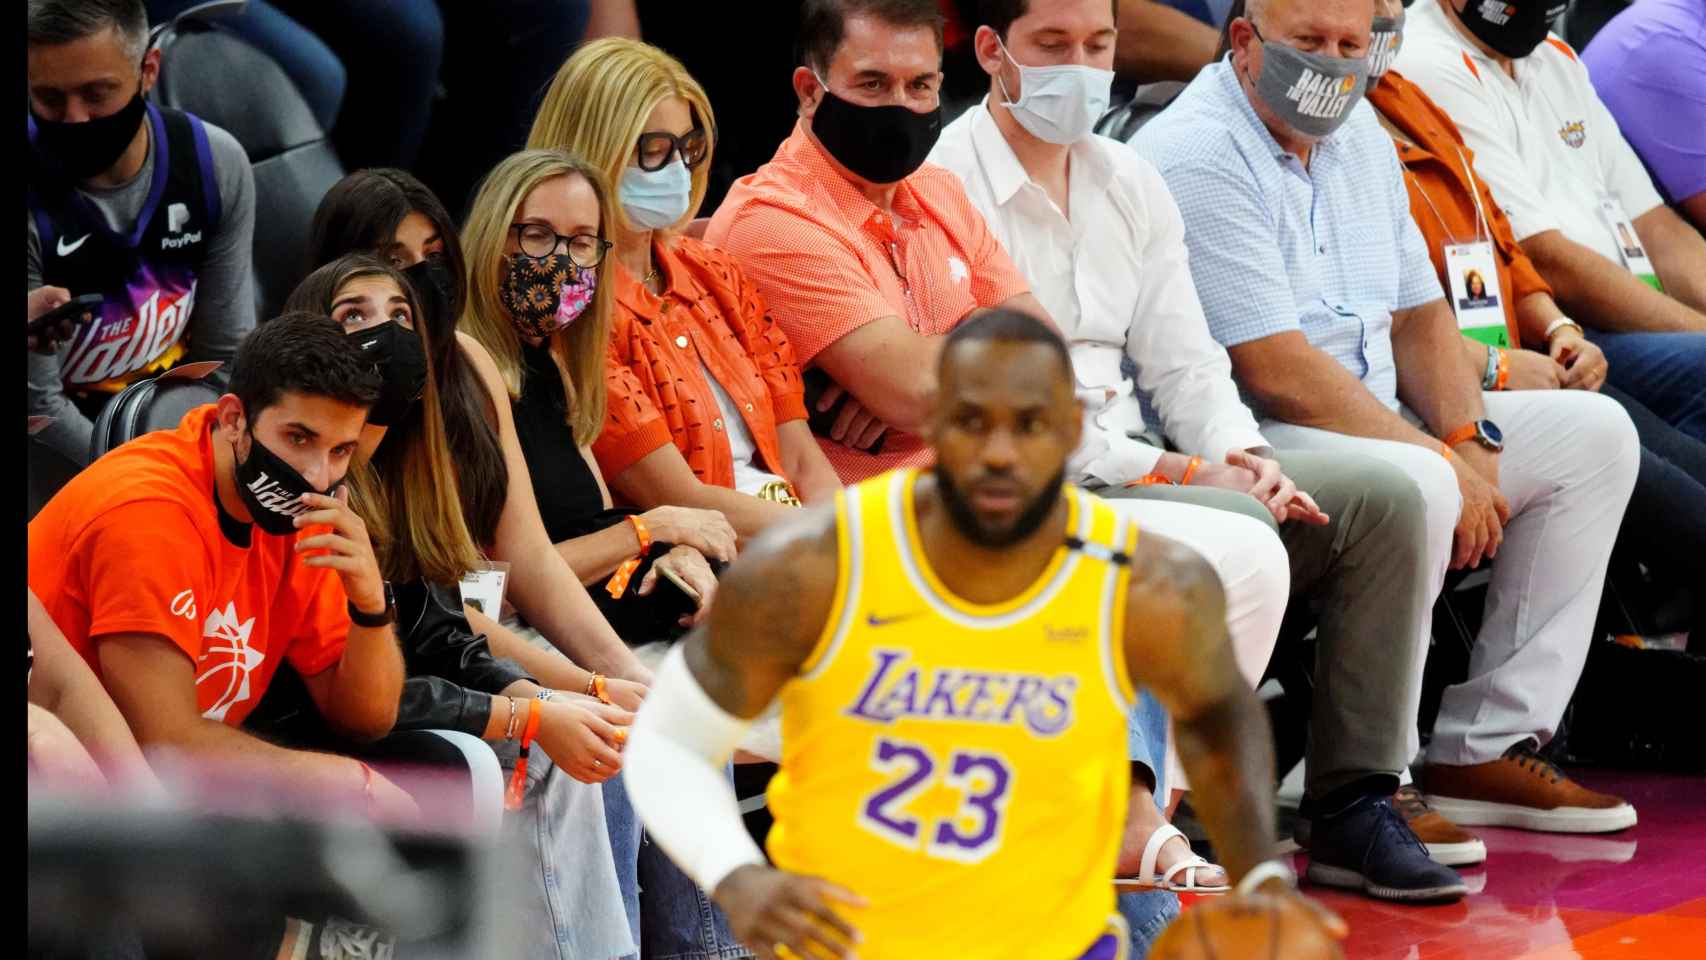 LeBron James durante el partido entre Knicks y Lakers de la NBA